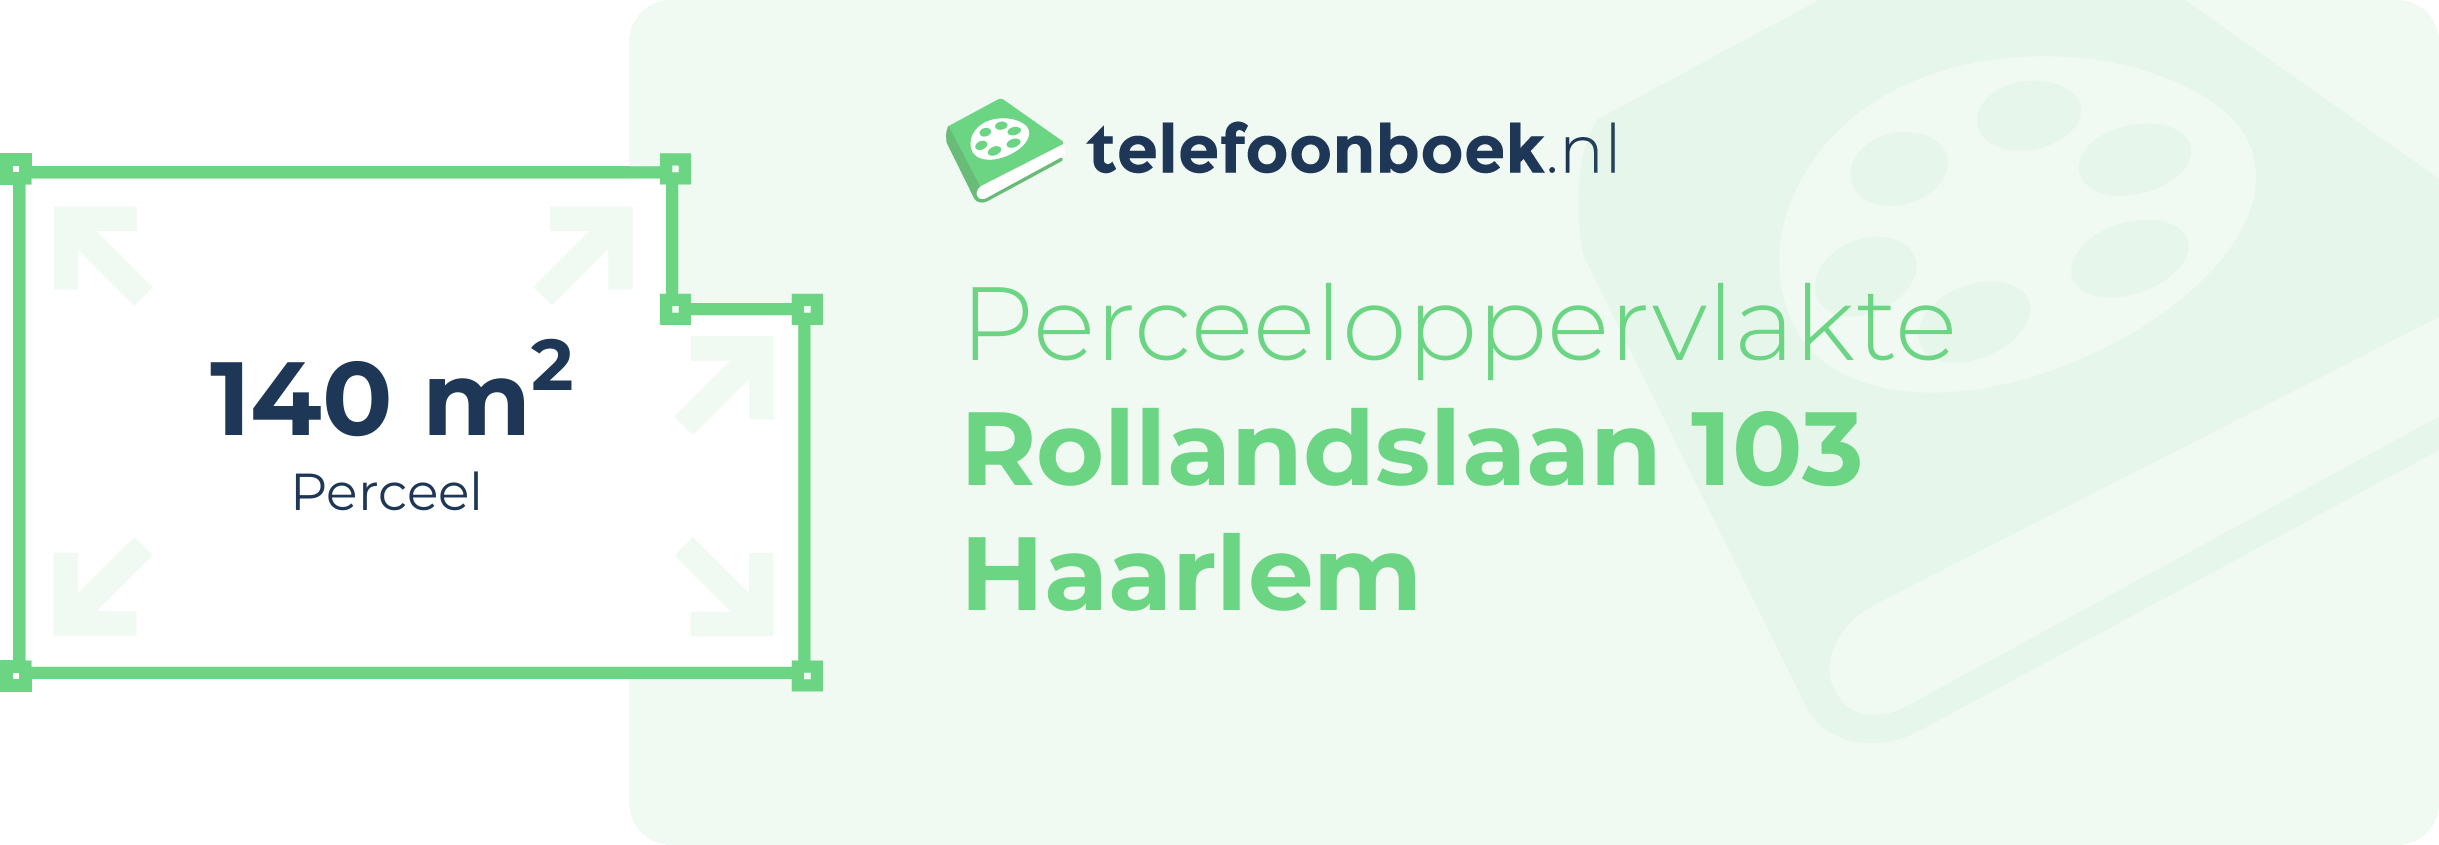 Perceeloppervlakte Rollandslaan 103 Haarlem